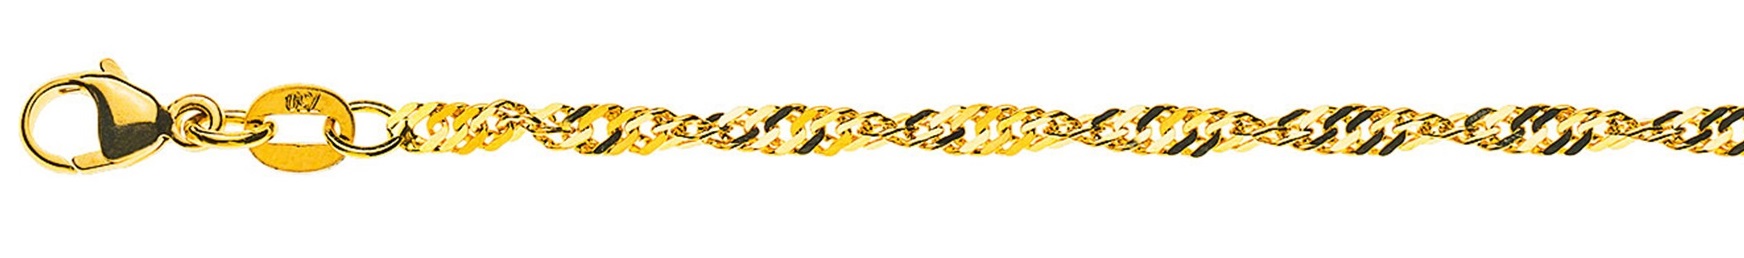 AURONOS Prestige Halskette Gelbgold 18K Singapurkette 50cm 2.4mm